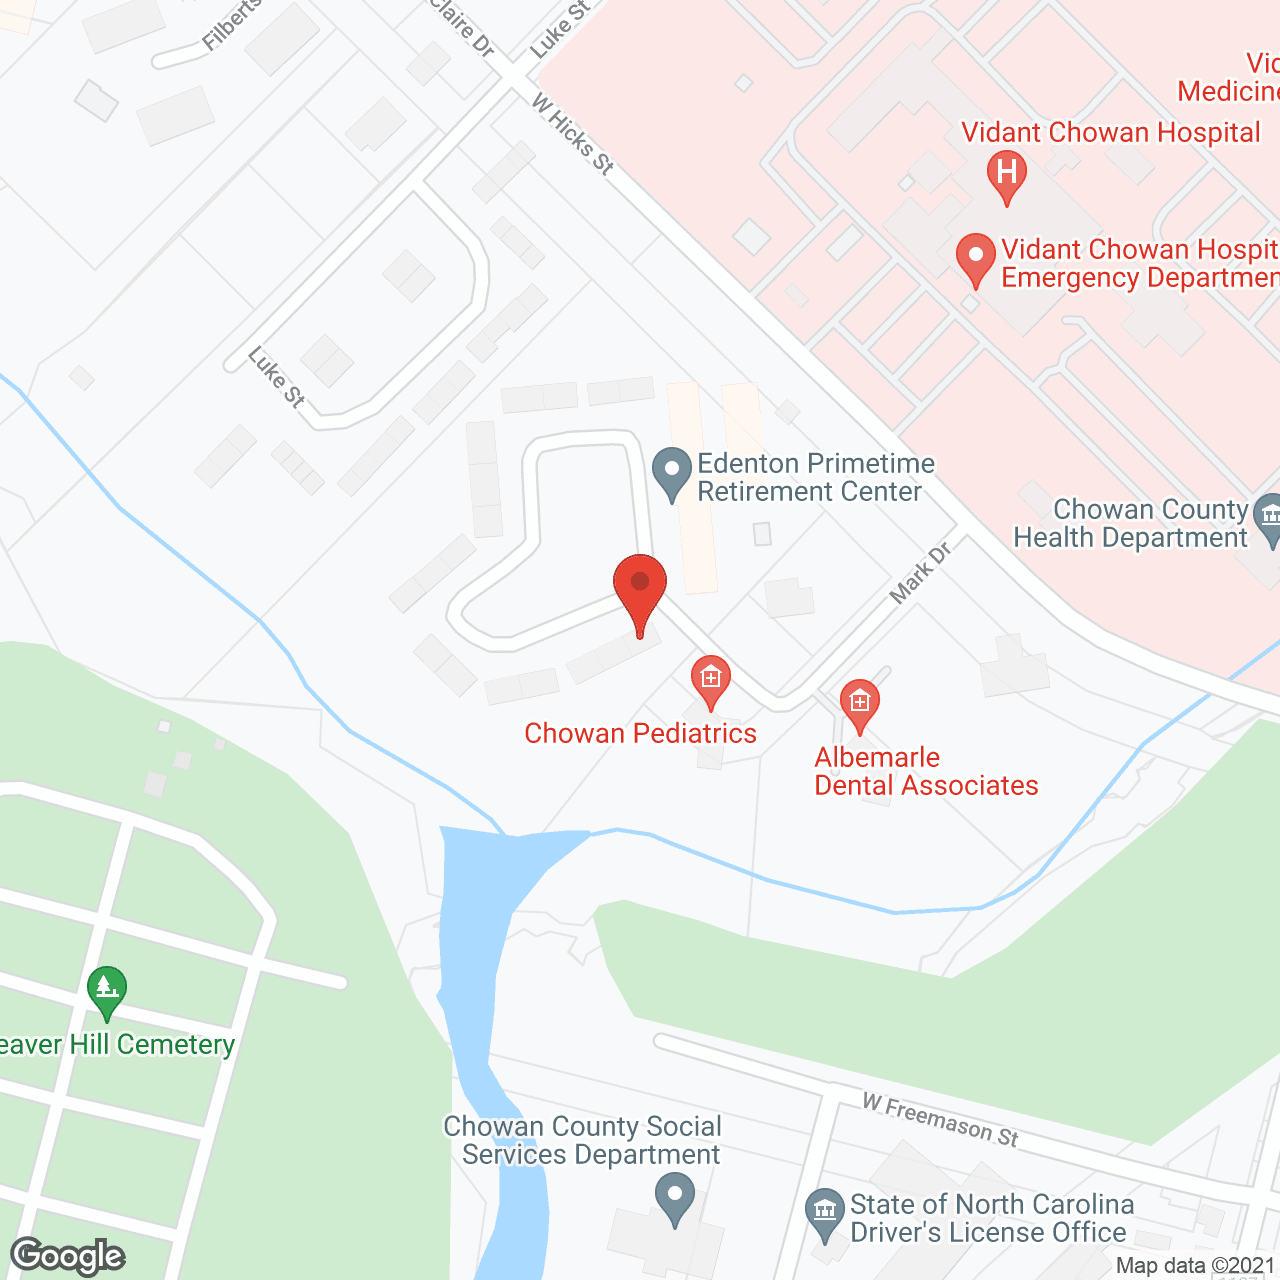 Edenton Primetime Retirement Center in google map